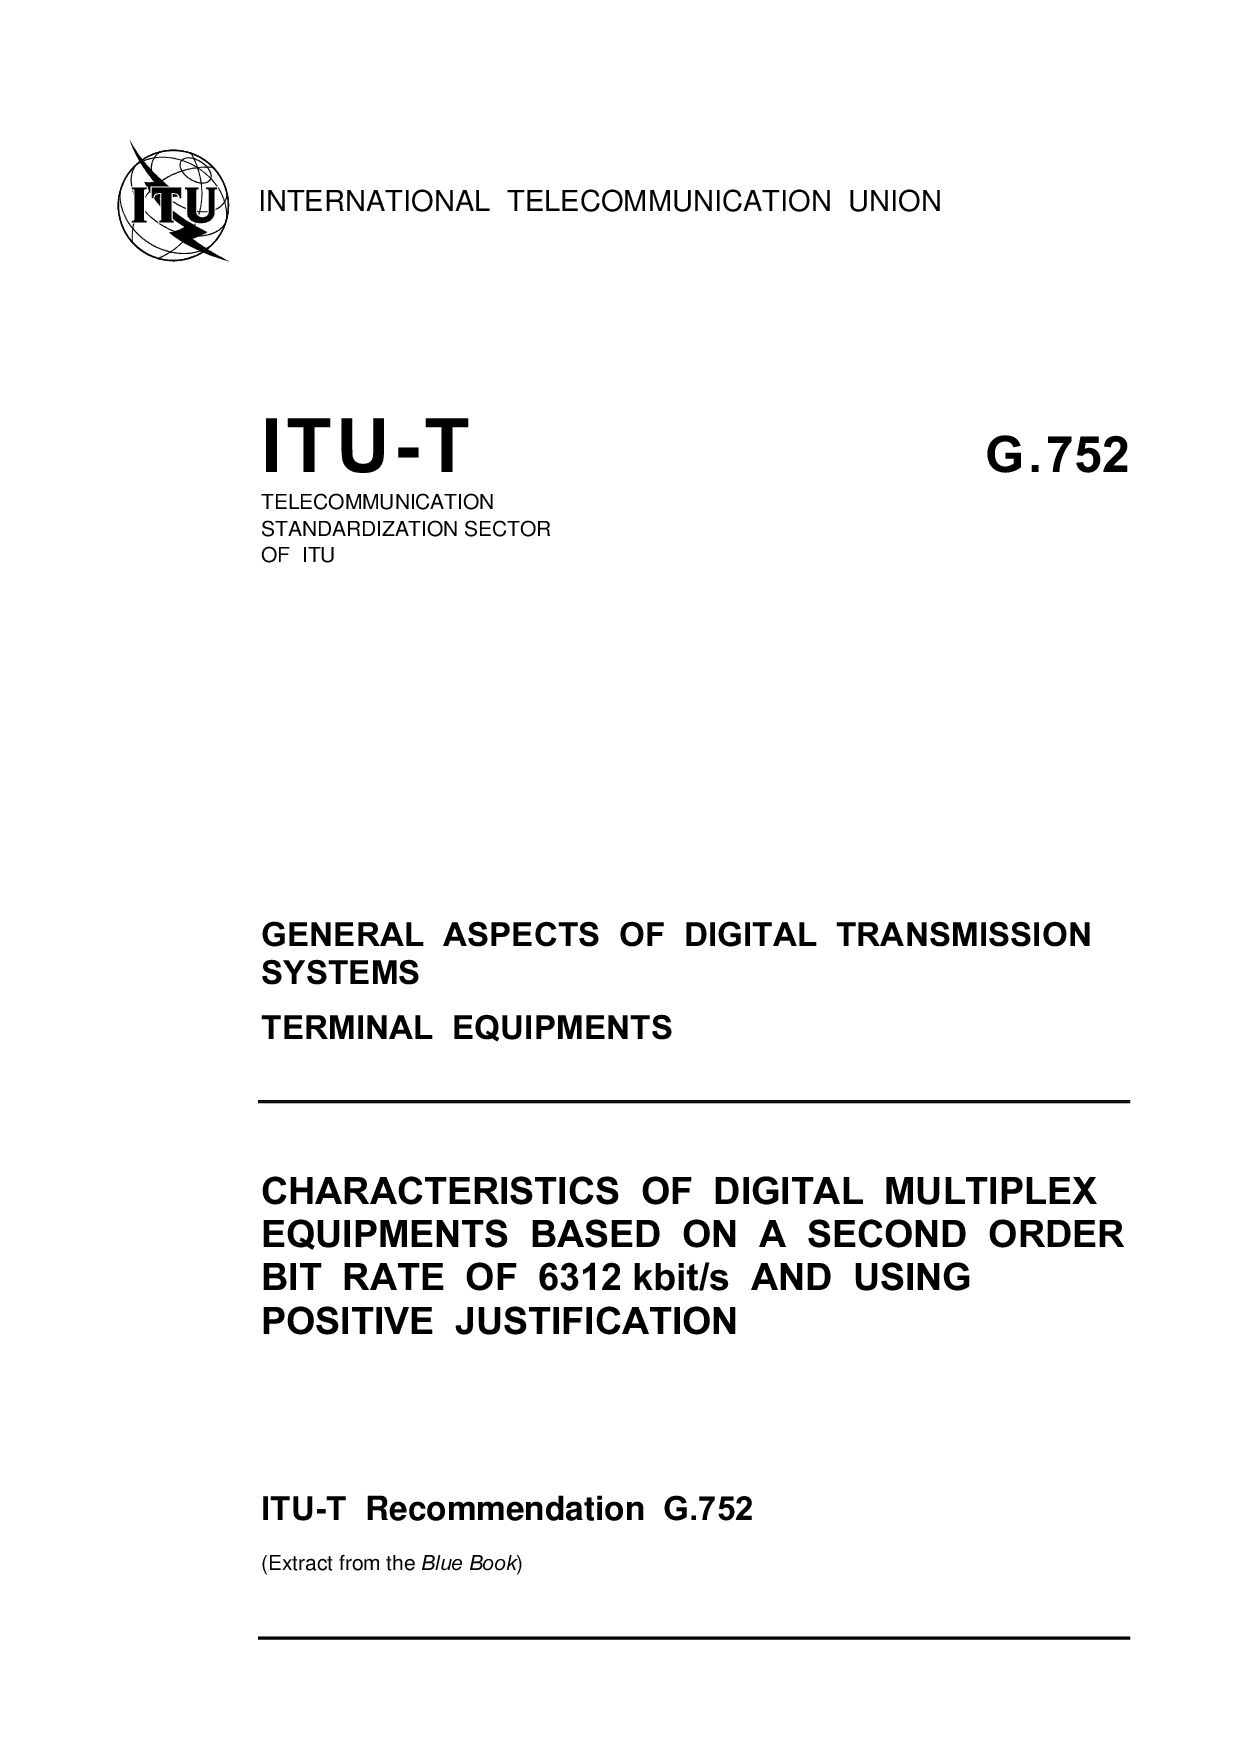 ITU-T G.752-1993